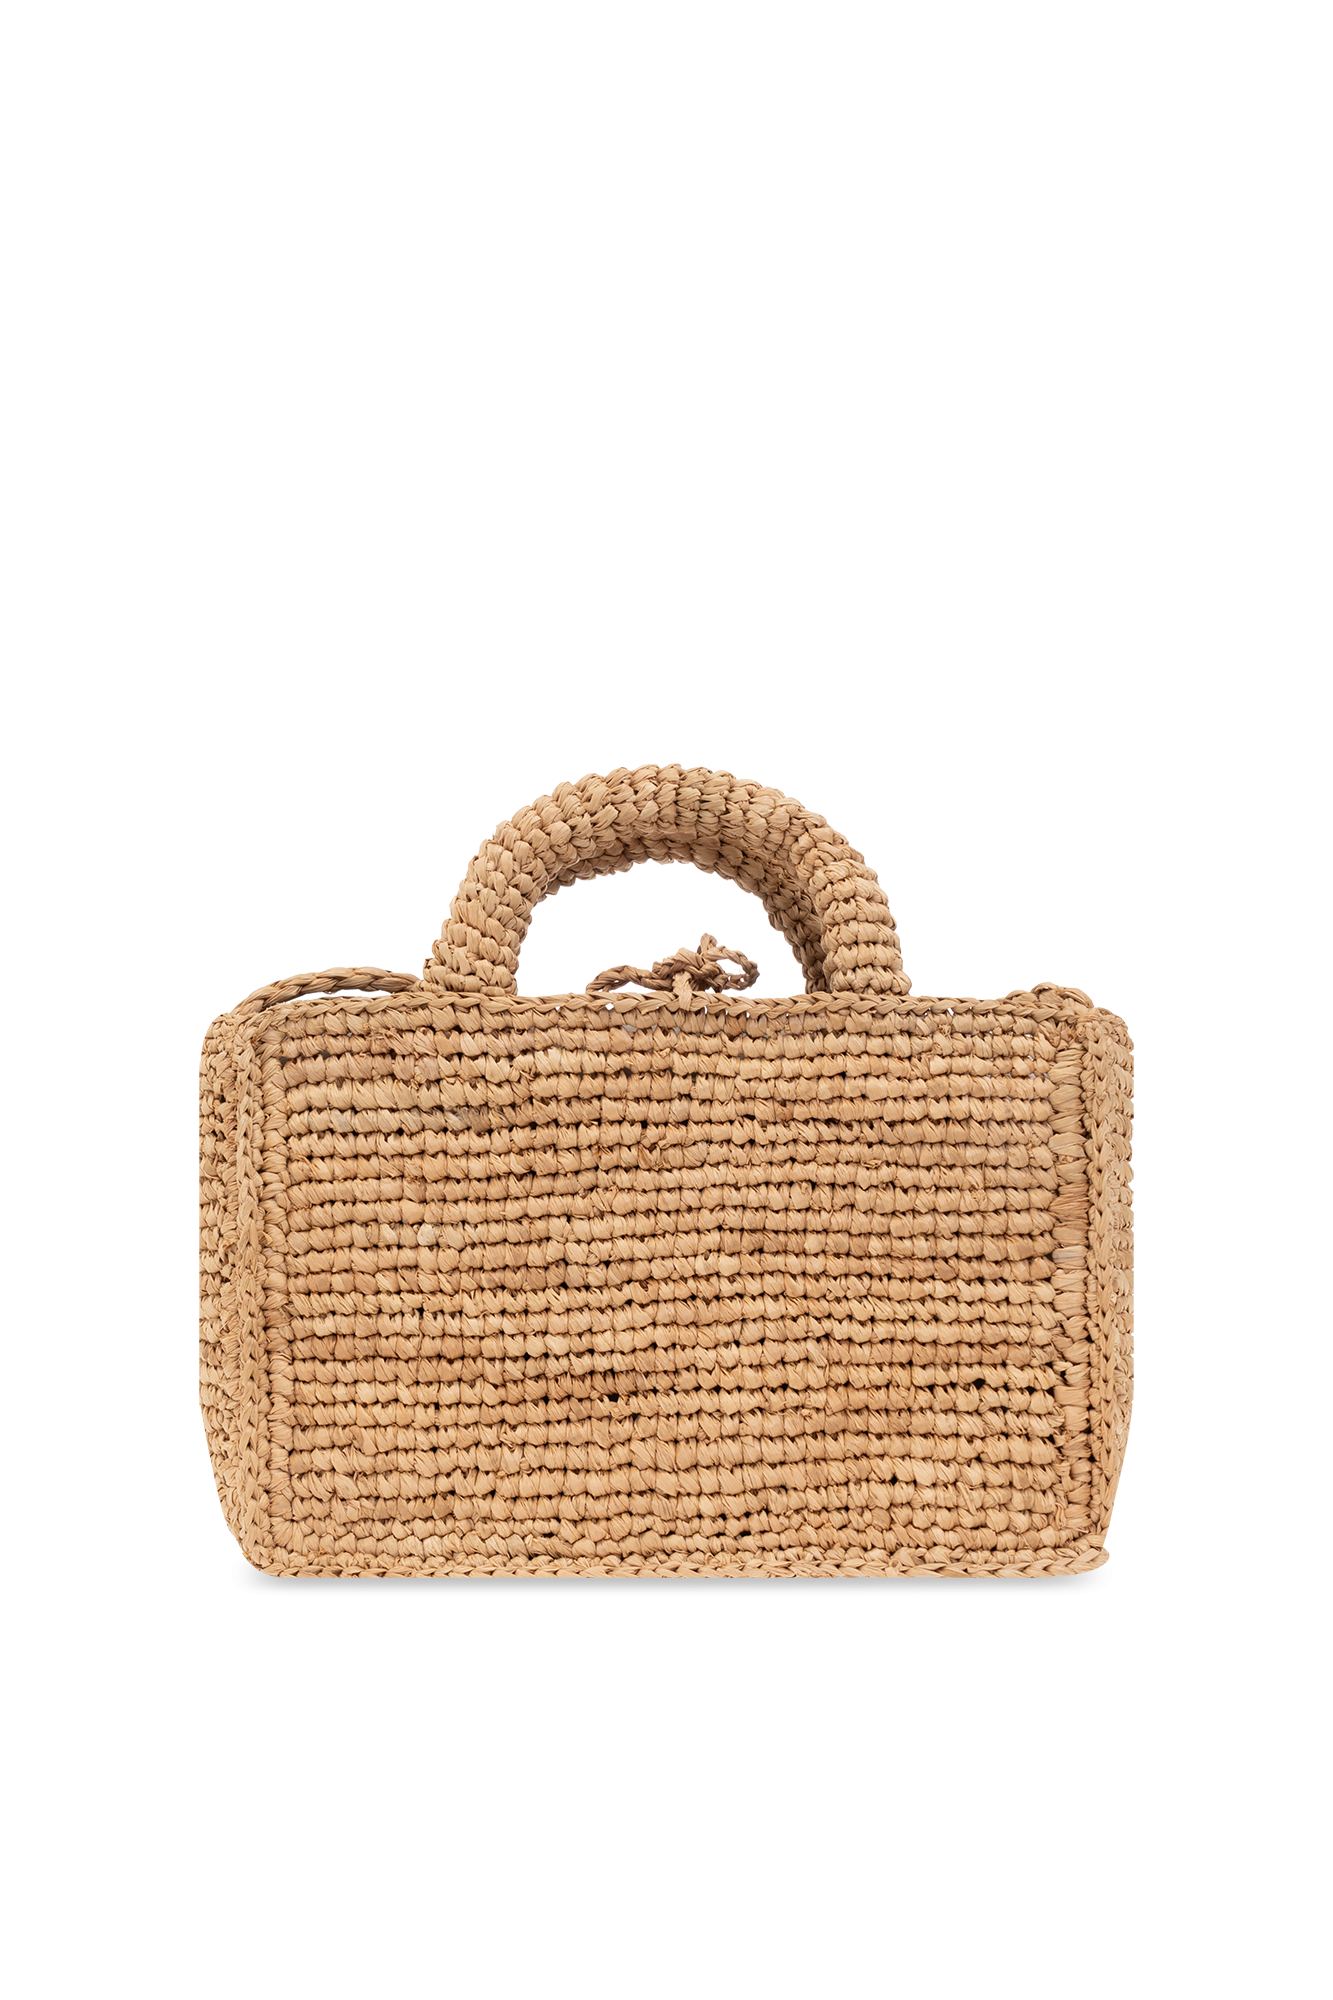 Manebí ‘Sunset Mini’ shoulder bag